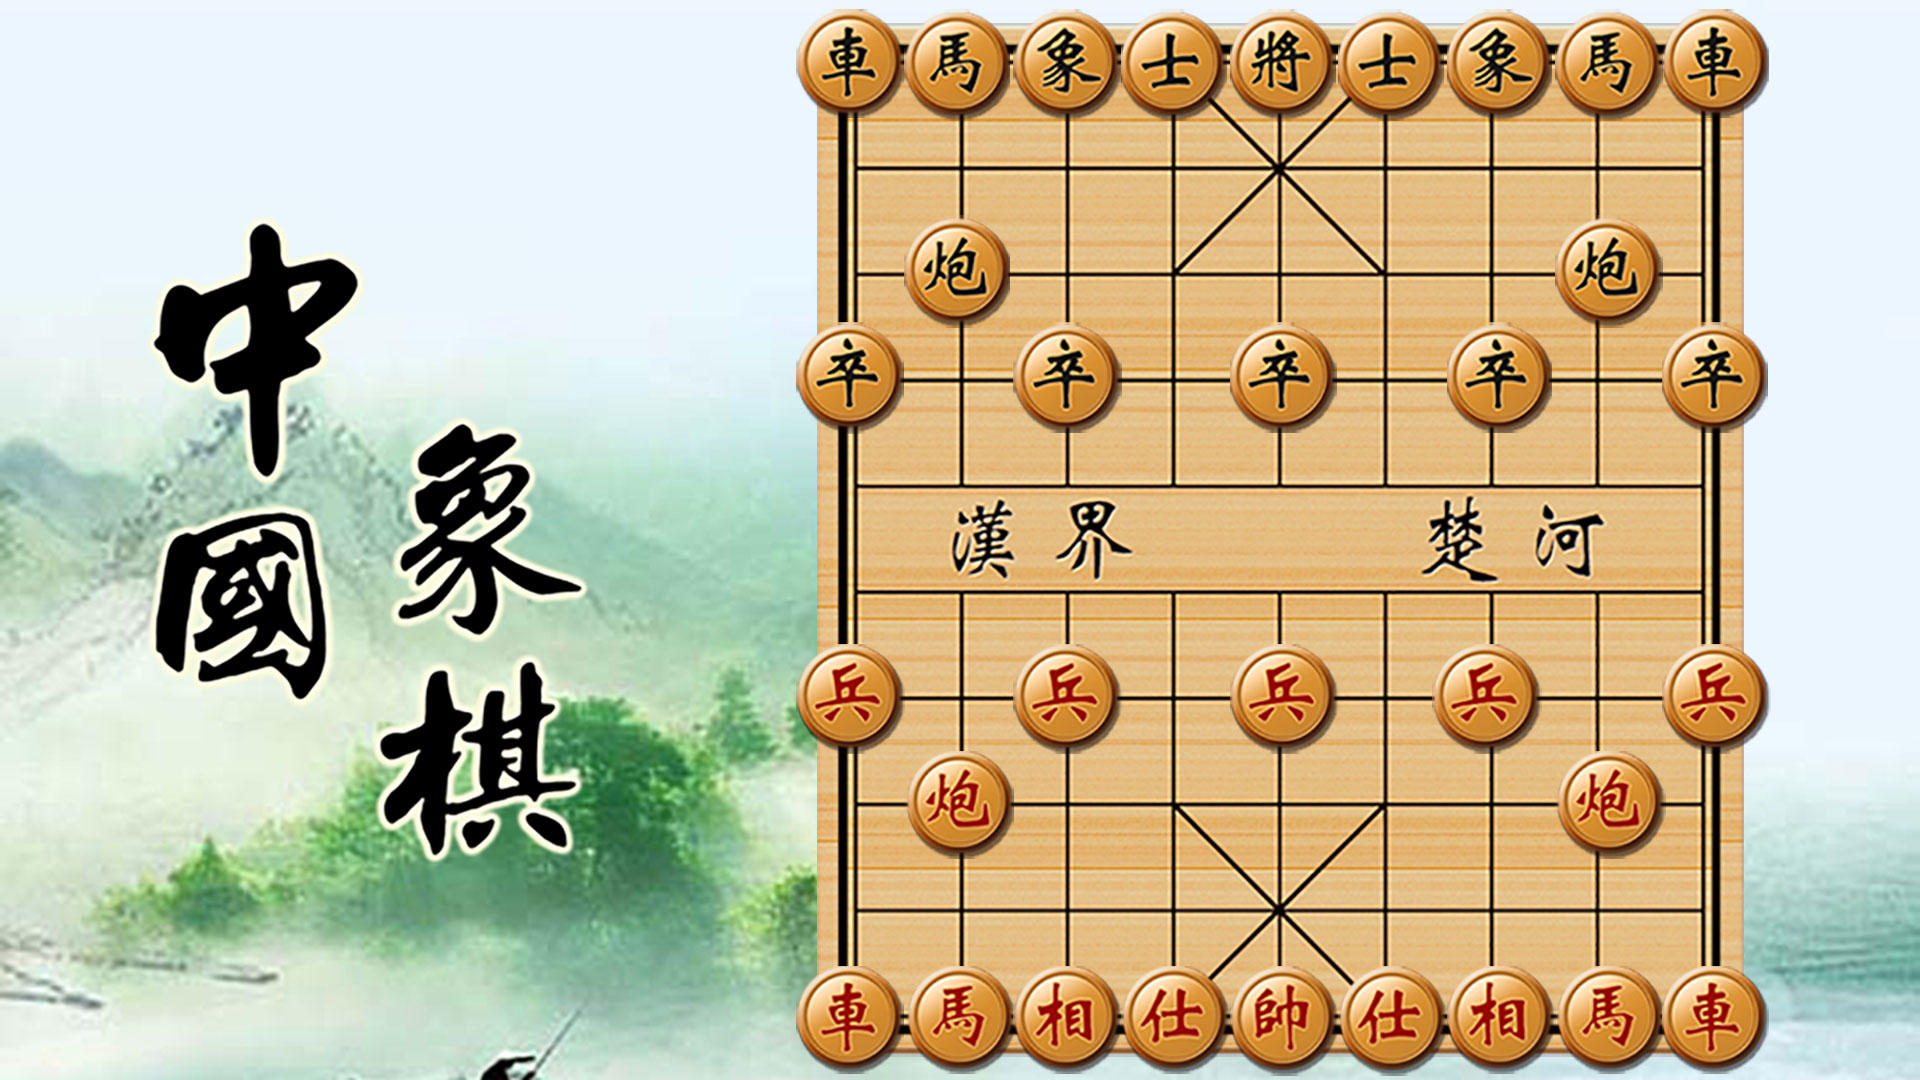 中国象棋单机对战游戏截图